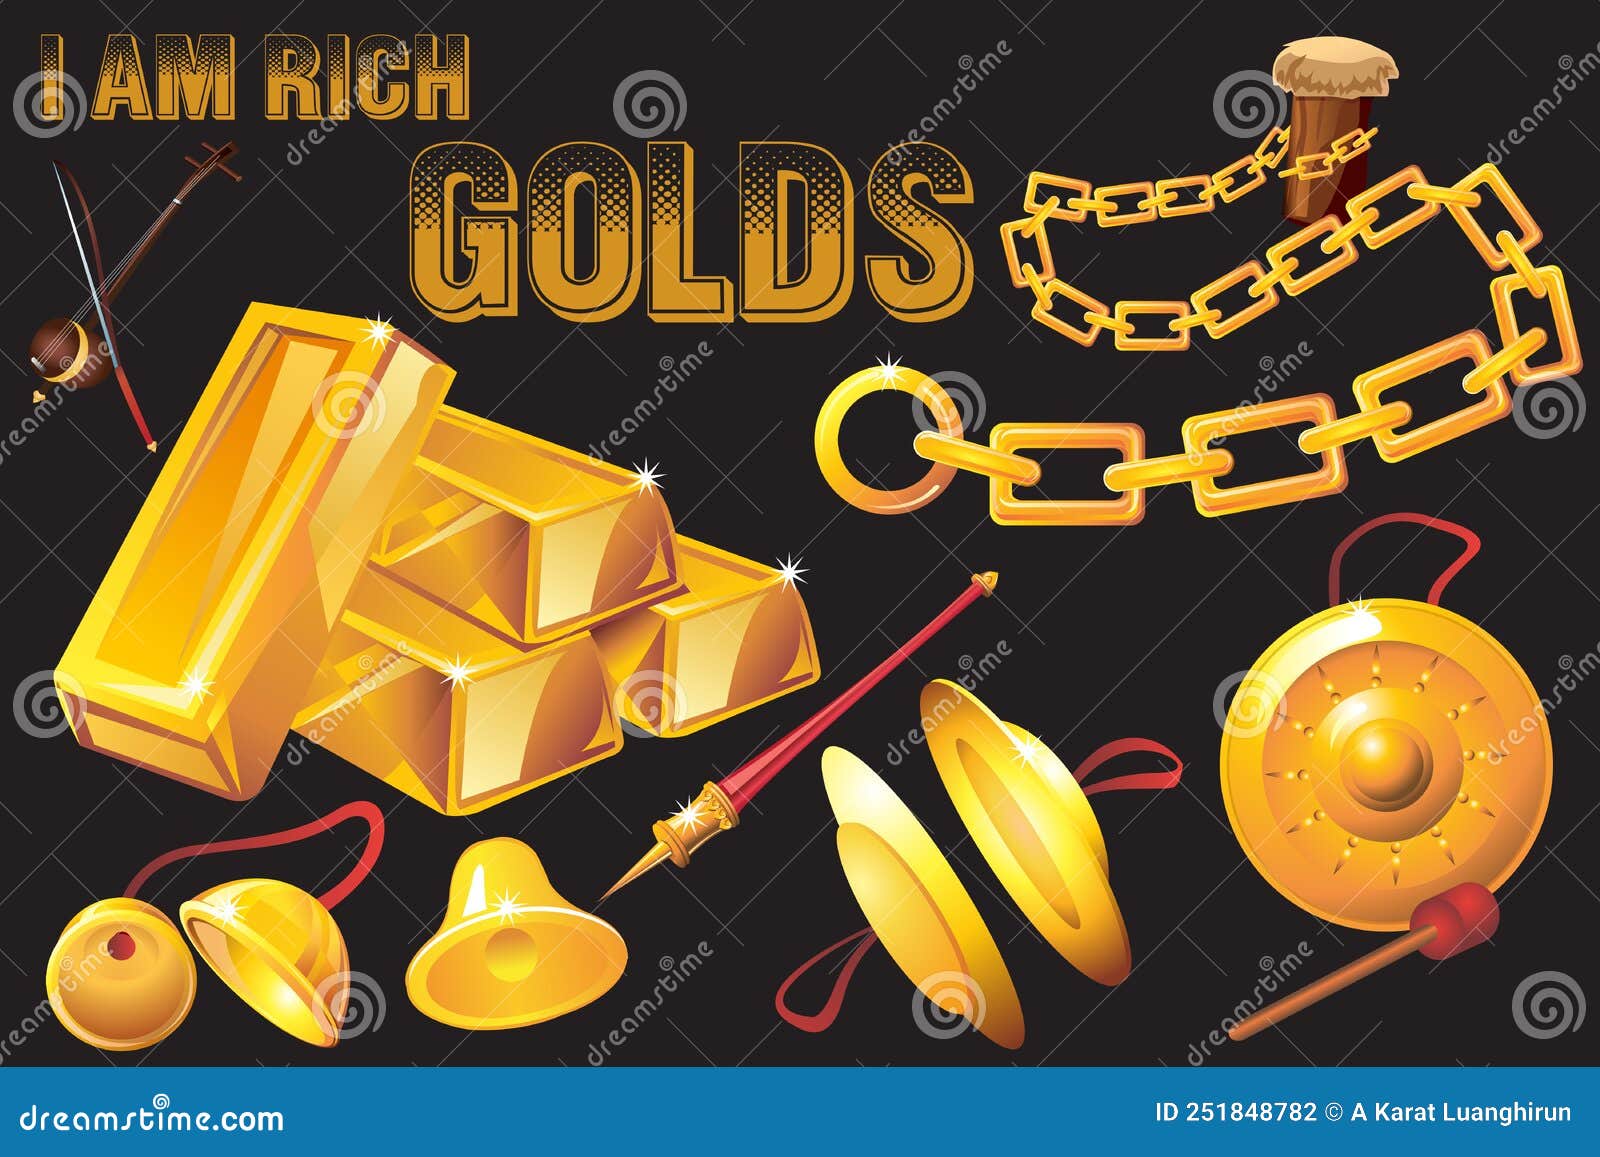 i am rich gold